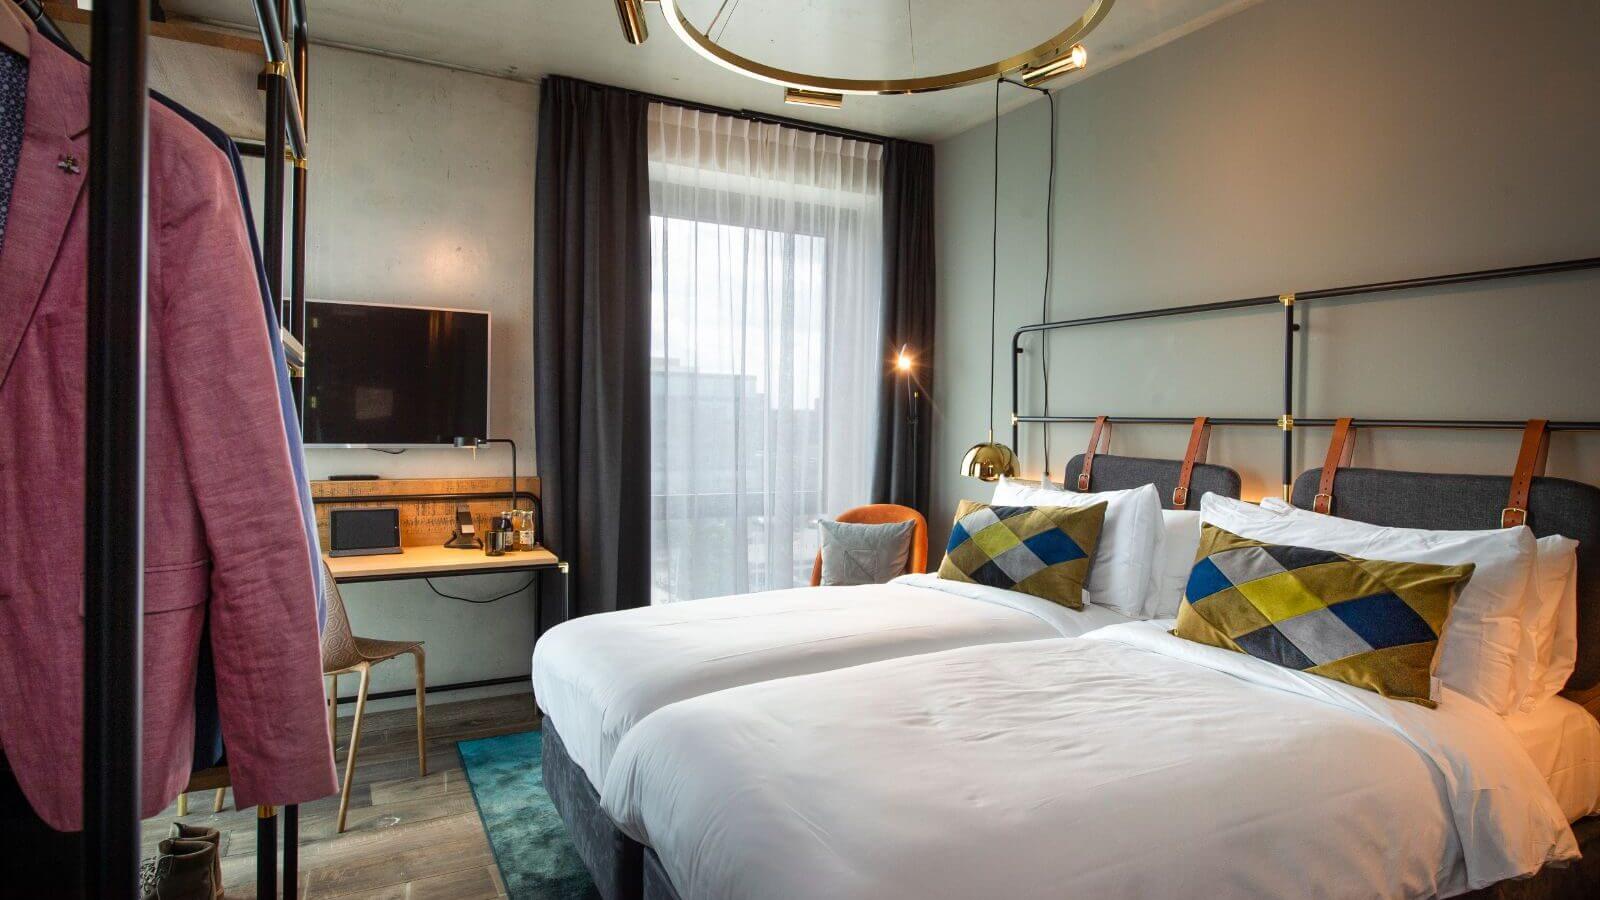 Four Elements Hotel Amsterdam -  - Nederland